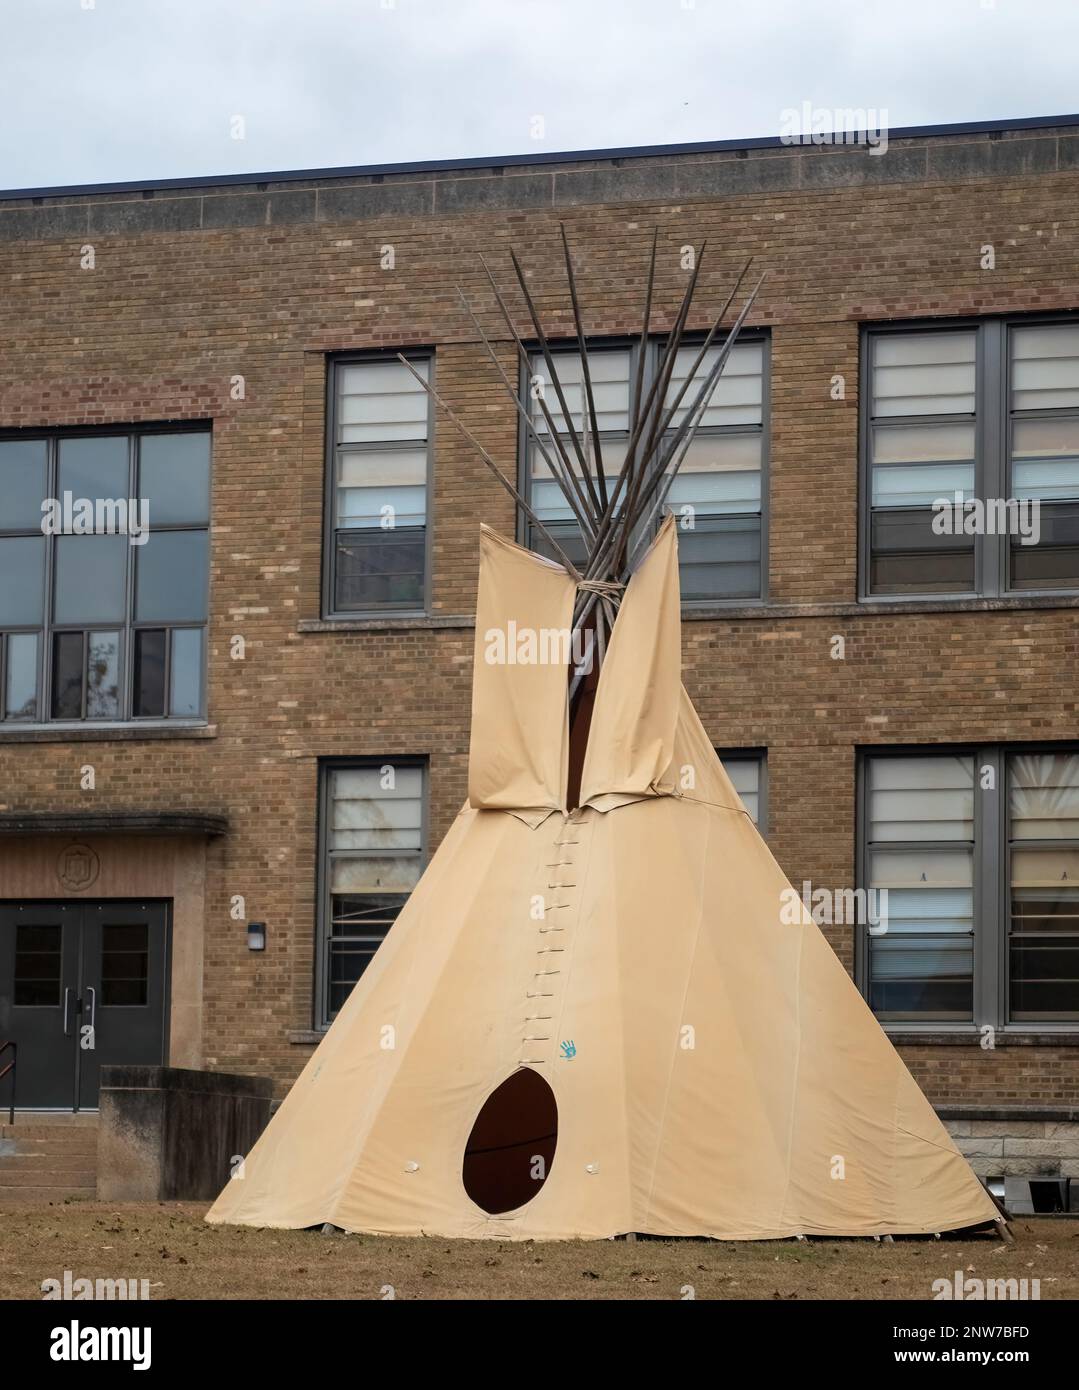 Préparation de tipi amérindienne en face d'une école à Winona, Minnesota, États-Unis. Banque D'Images